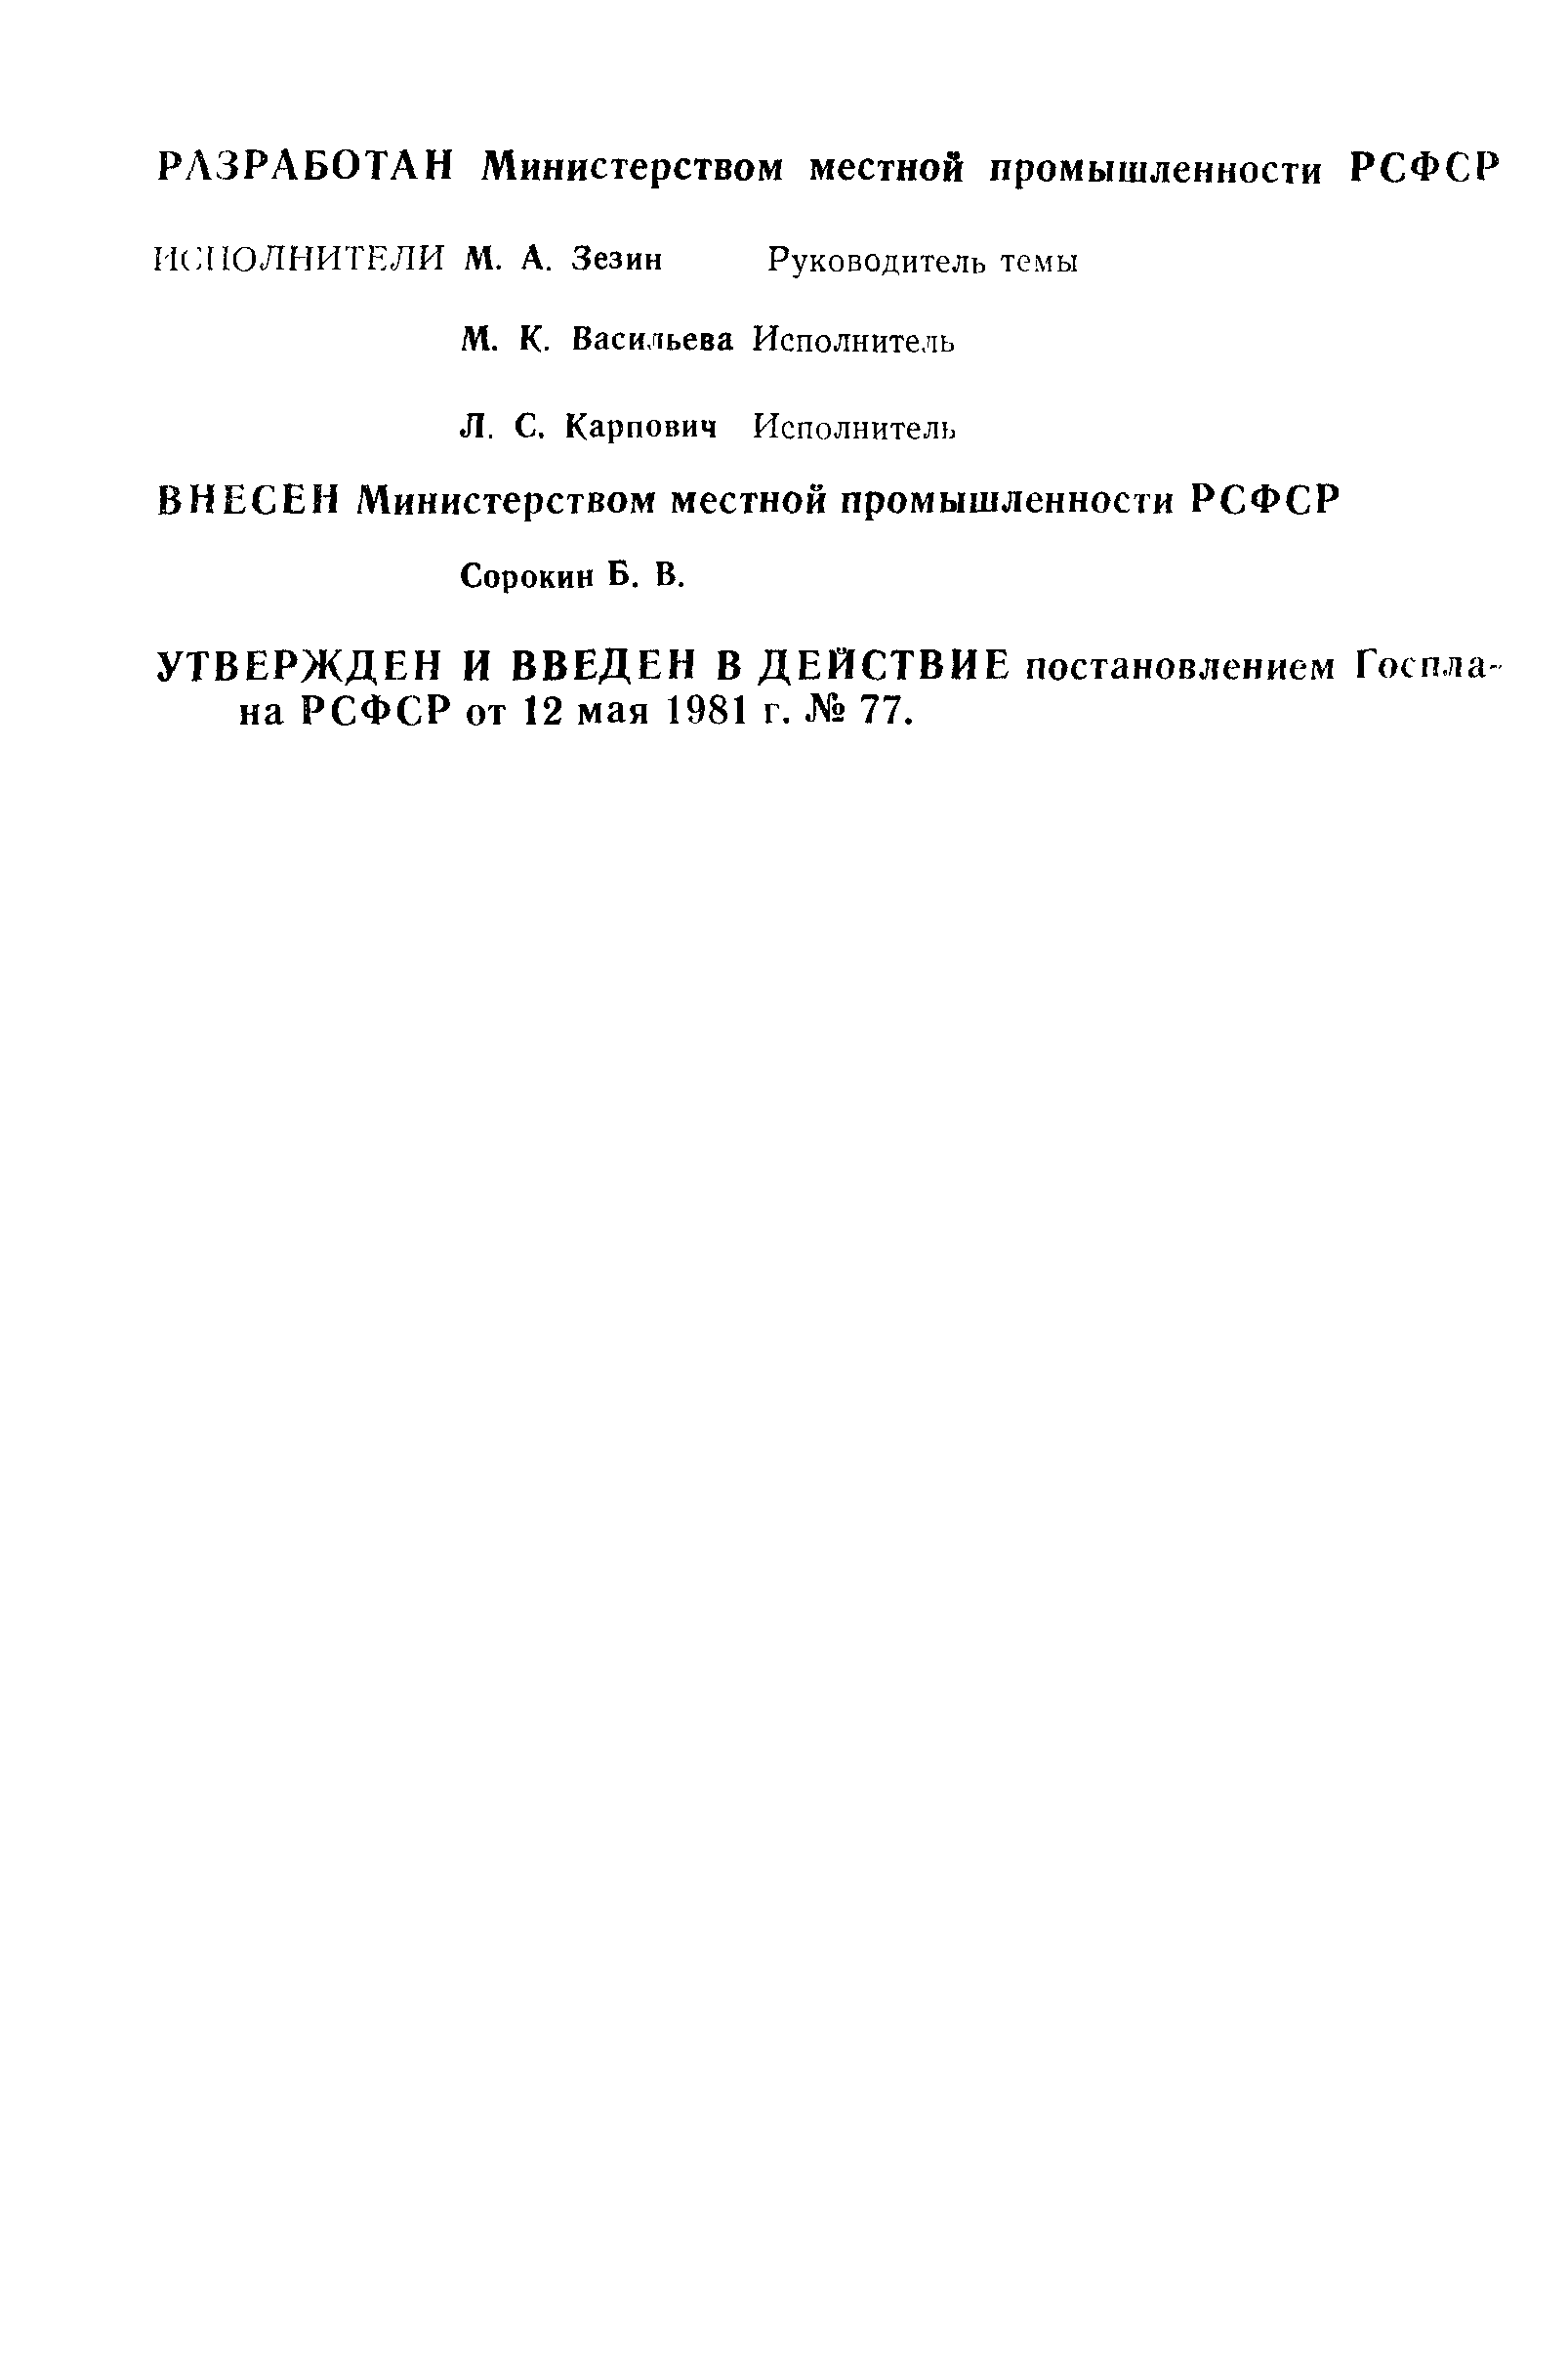 РСТ РСФСР 656-81